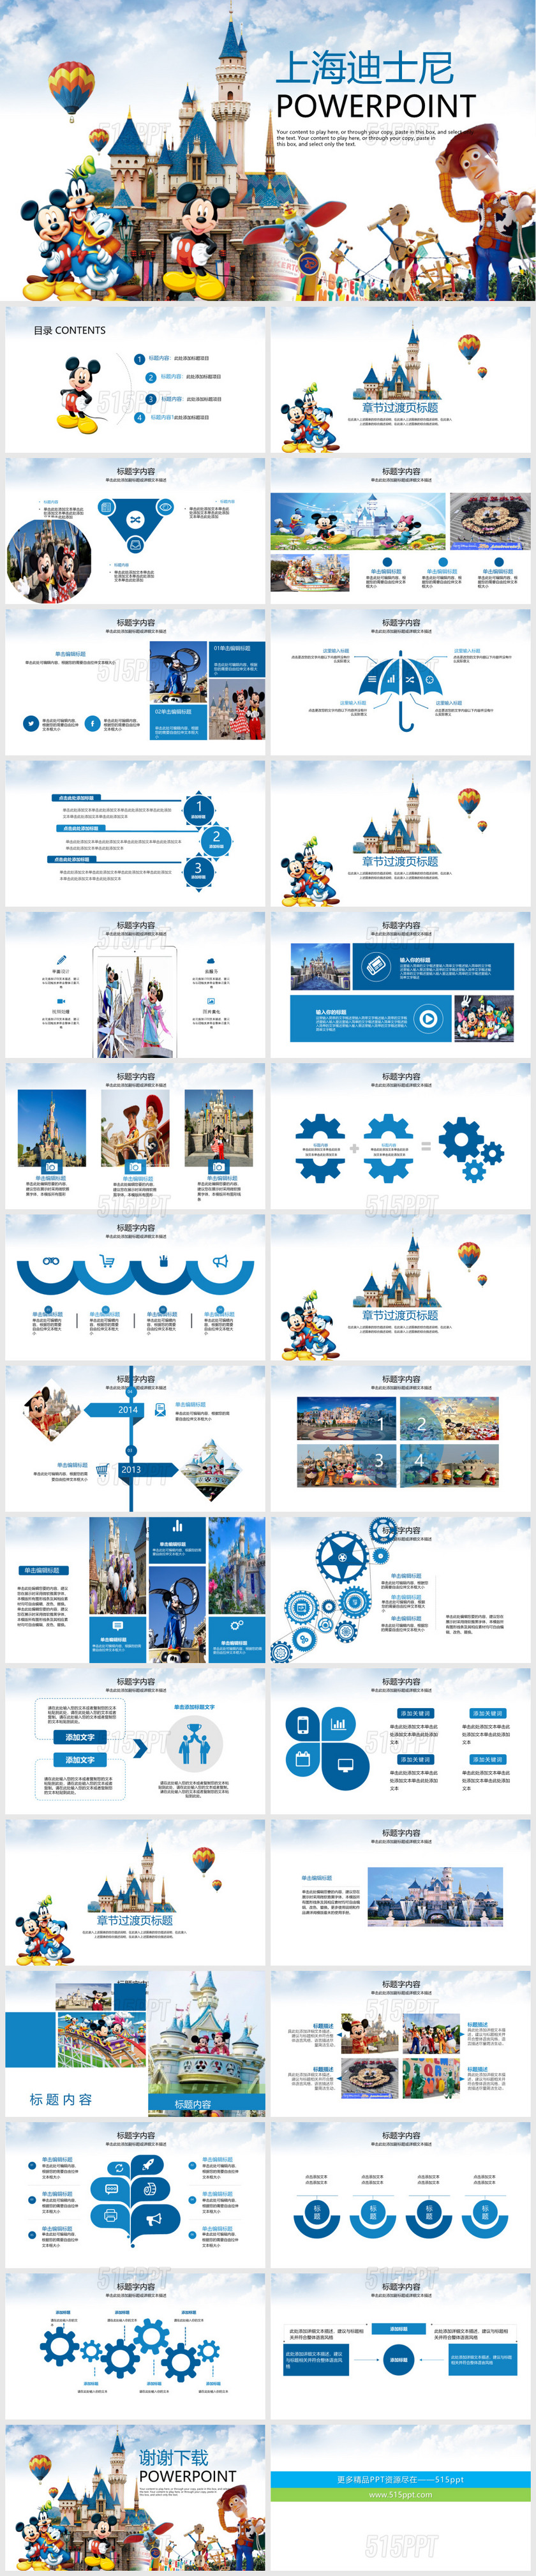 上海迪士尼乐园渡假旅游宣传动态ppt模板